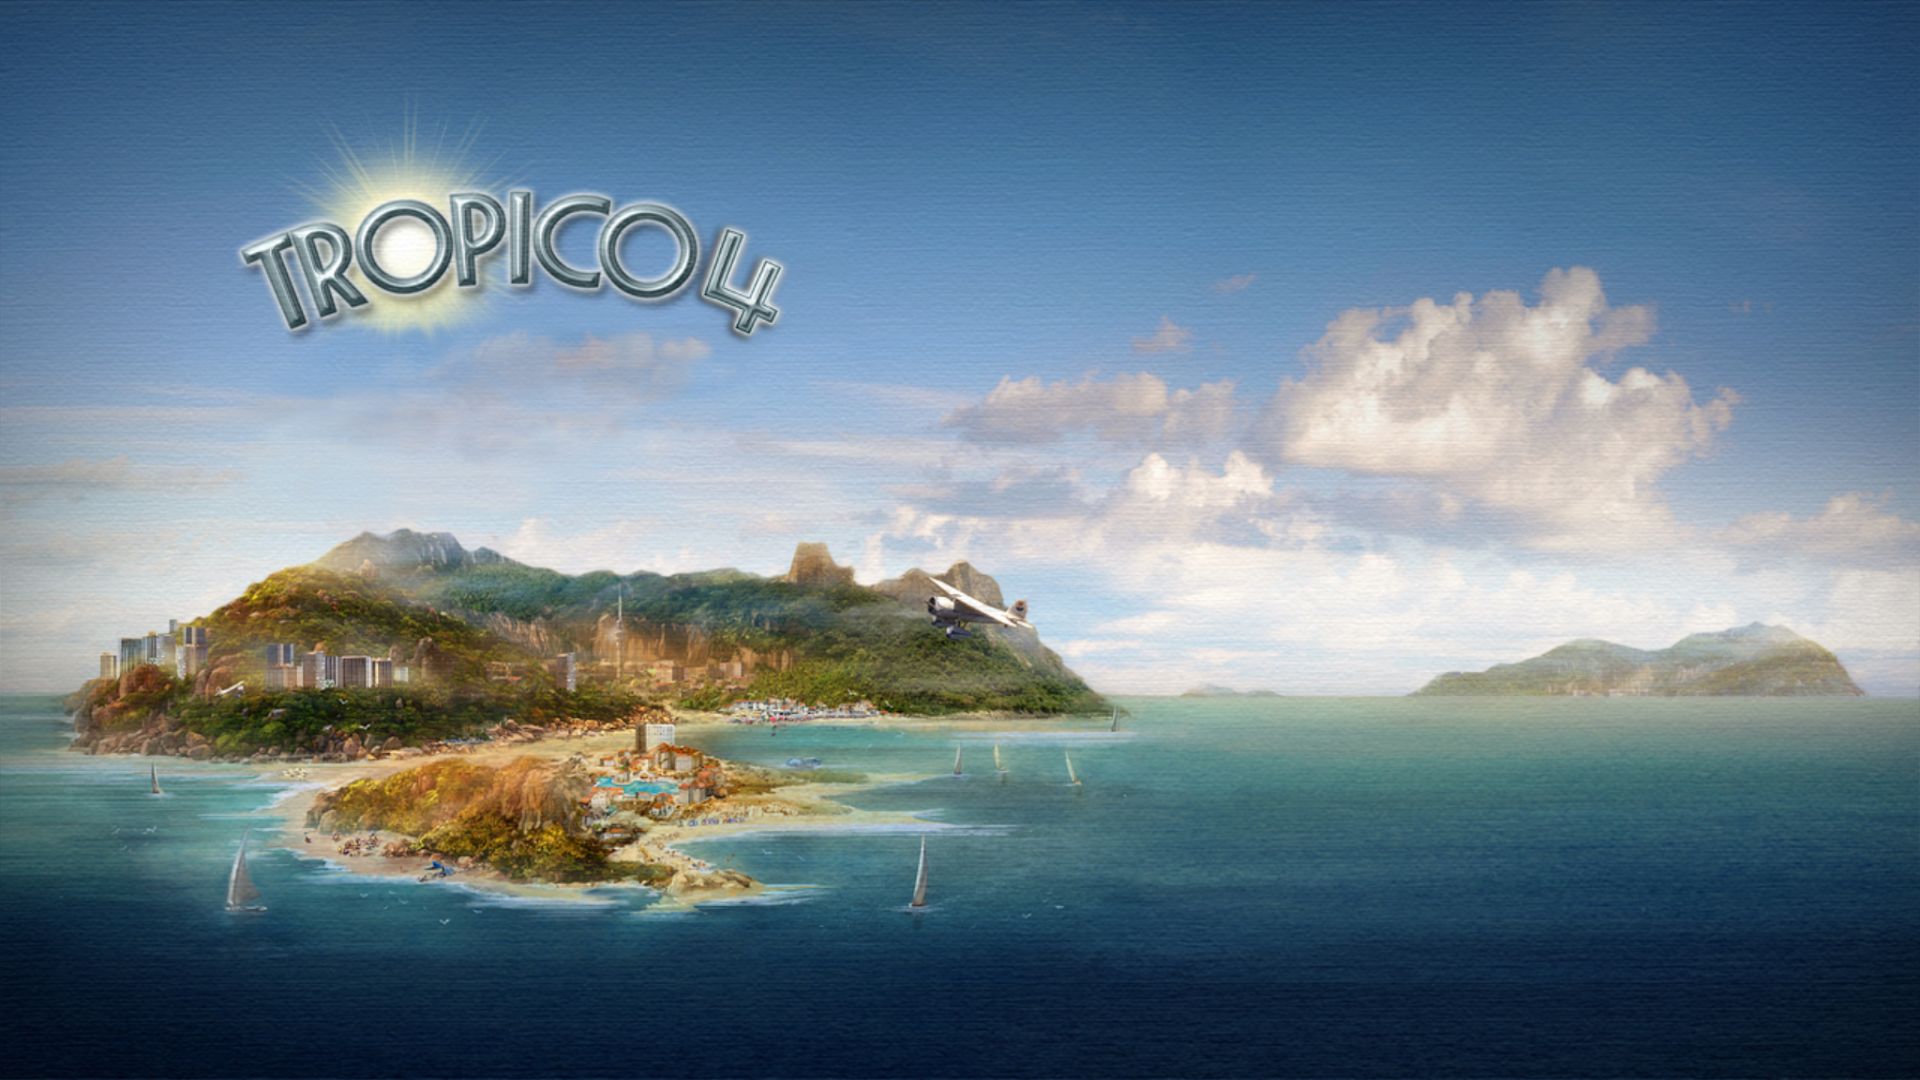 Descargar fondos de escritorio de Tropico 4 HD